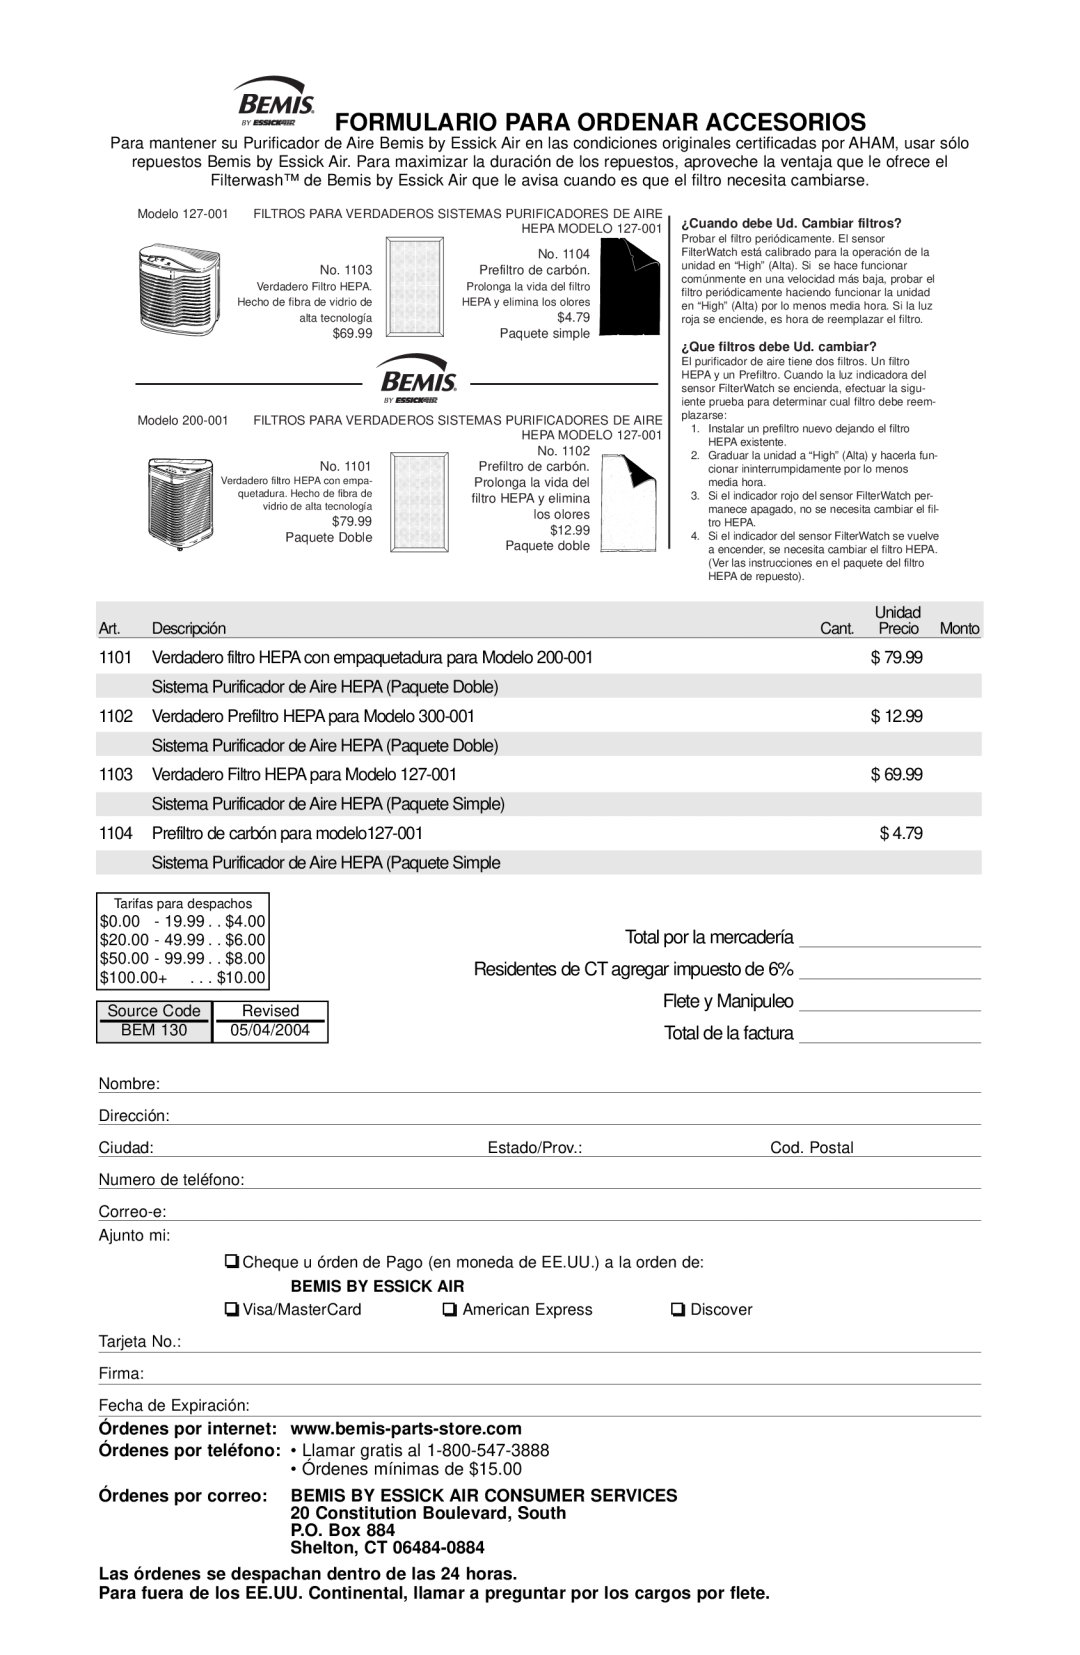 Essick Air 127-001 manual Formulario Para Ordenar Accesorios, P.O. Box Shelton, CT 